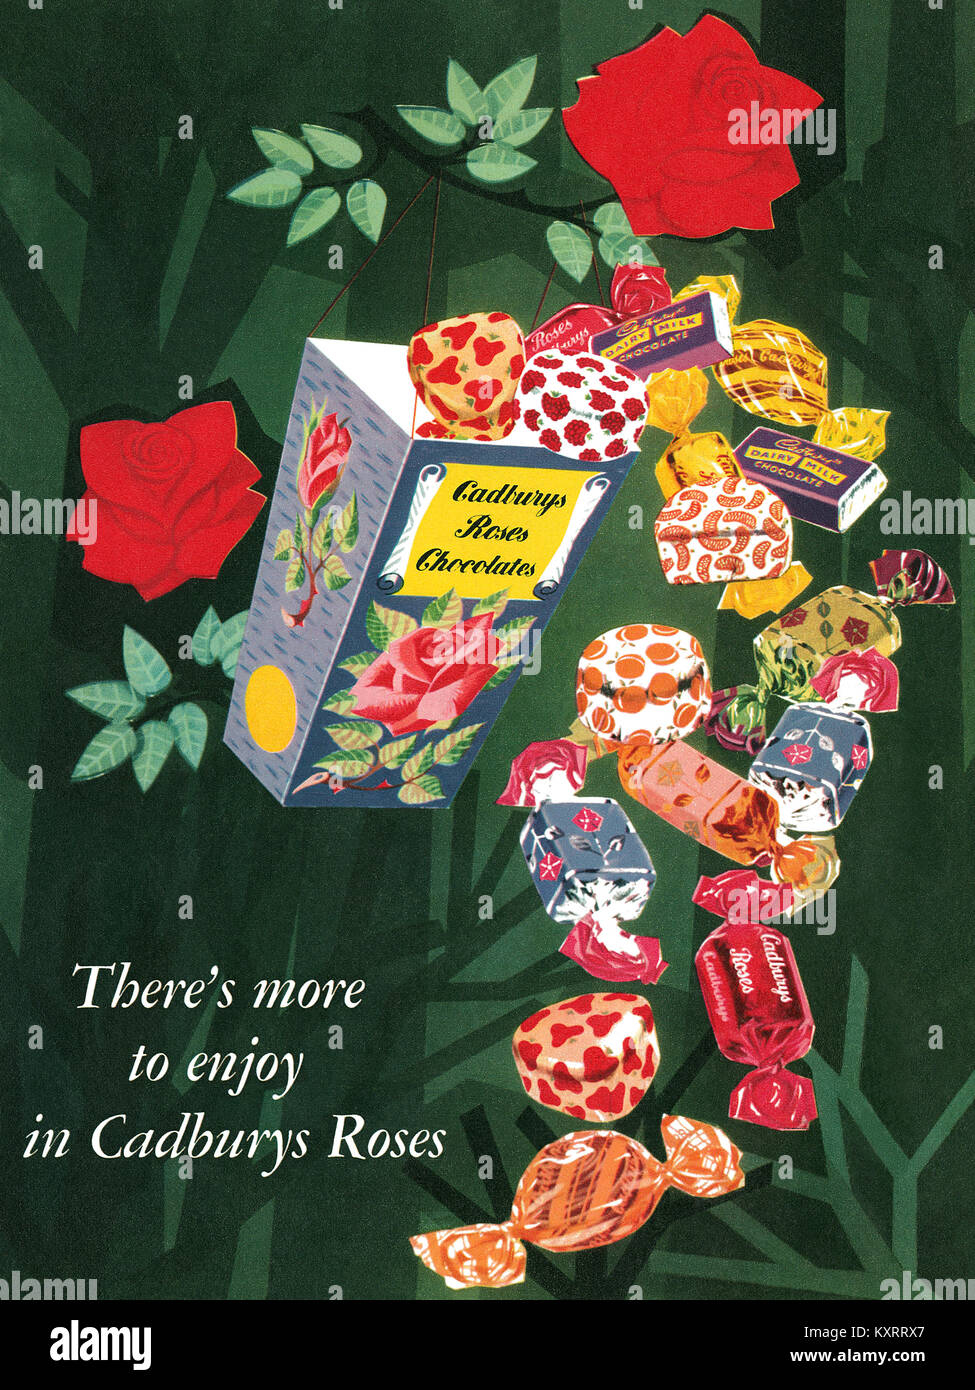 1959 britischen Werbung für Cadbury Roses Pralinen. Stockfoto